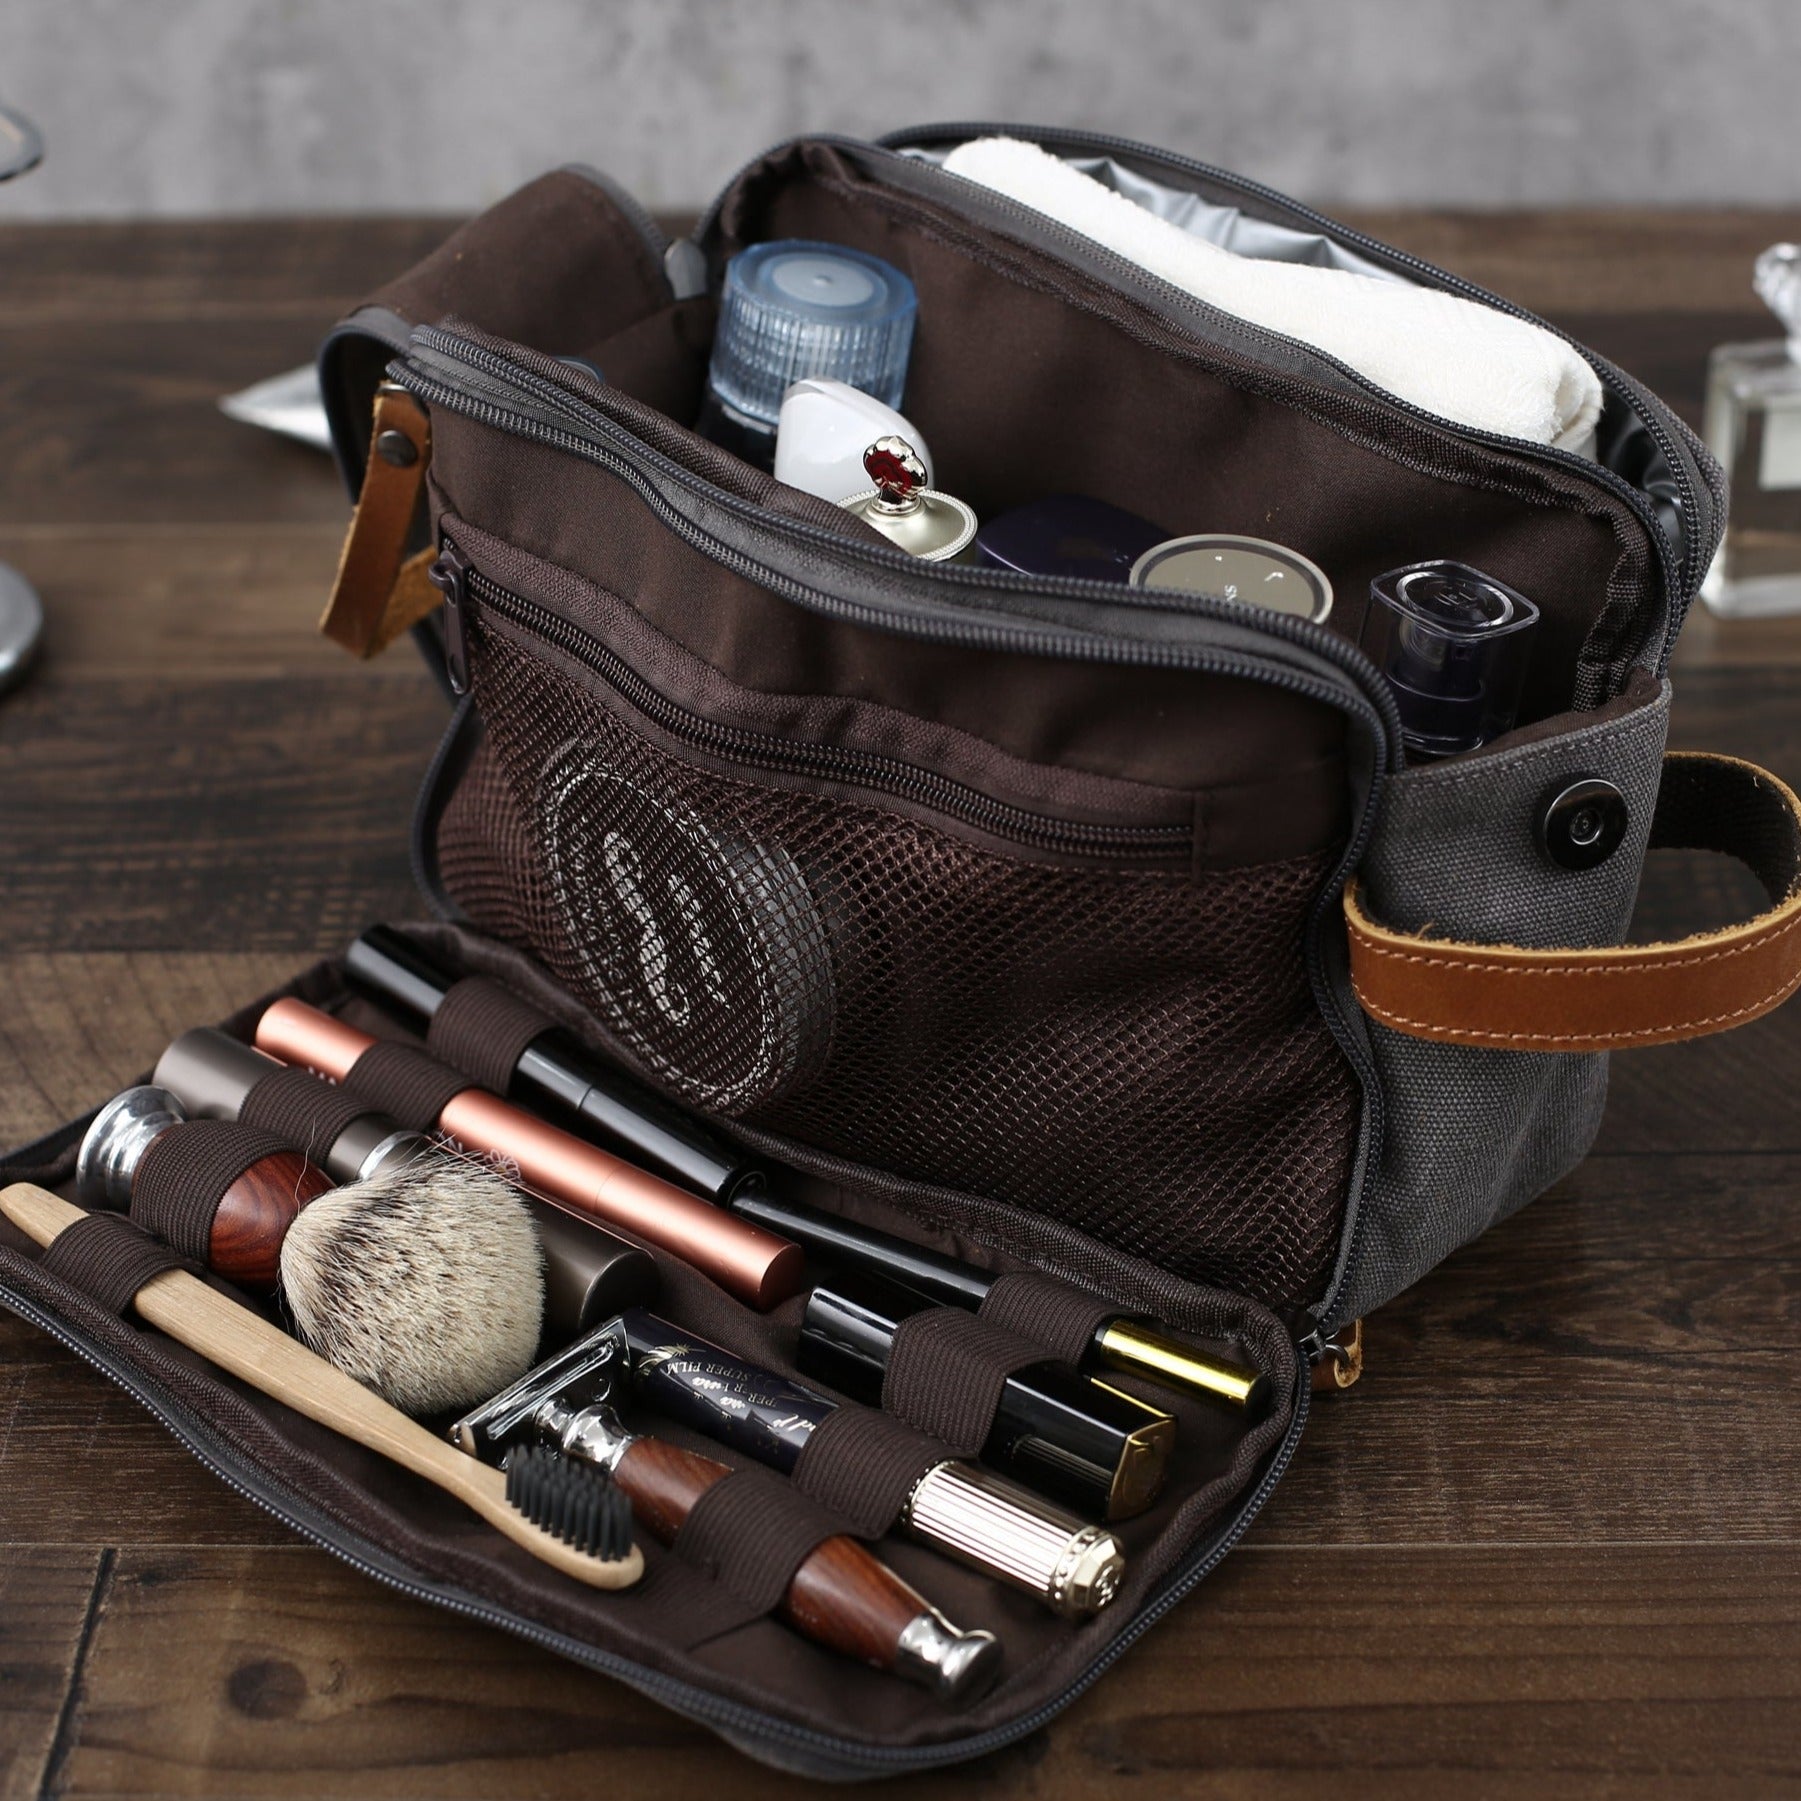 Personalized Groomsmen Gift, Cusotm Leather Toiletry Bag, Leather Dopp Kit,  Men's Shaving Kit